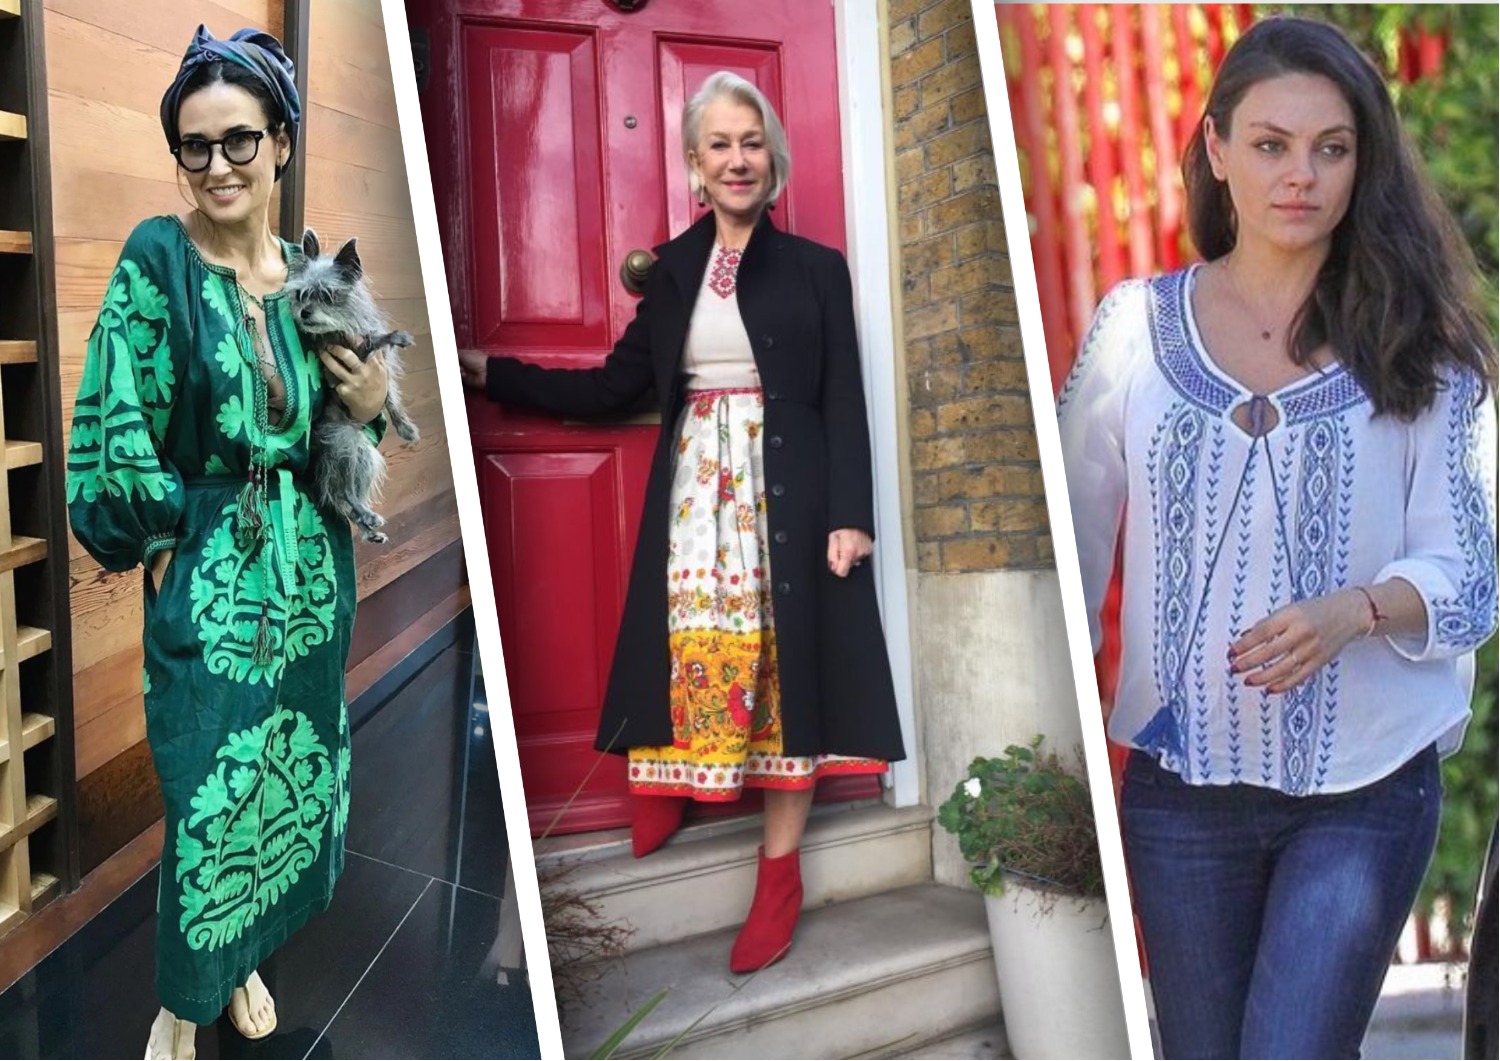 Как стильно носить вышиванку? Идеи образов в украинском стиле на каждый день (ФОТО)